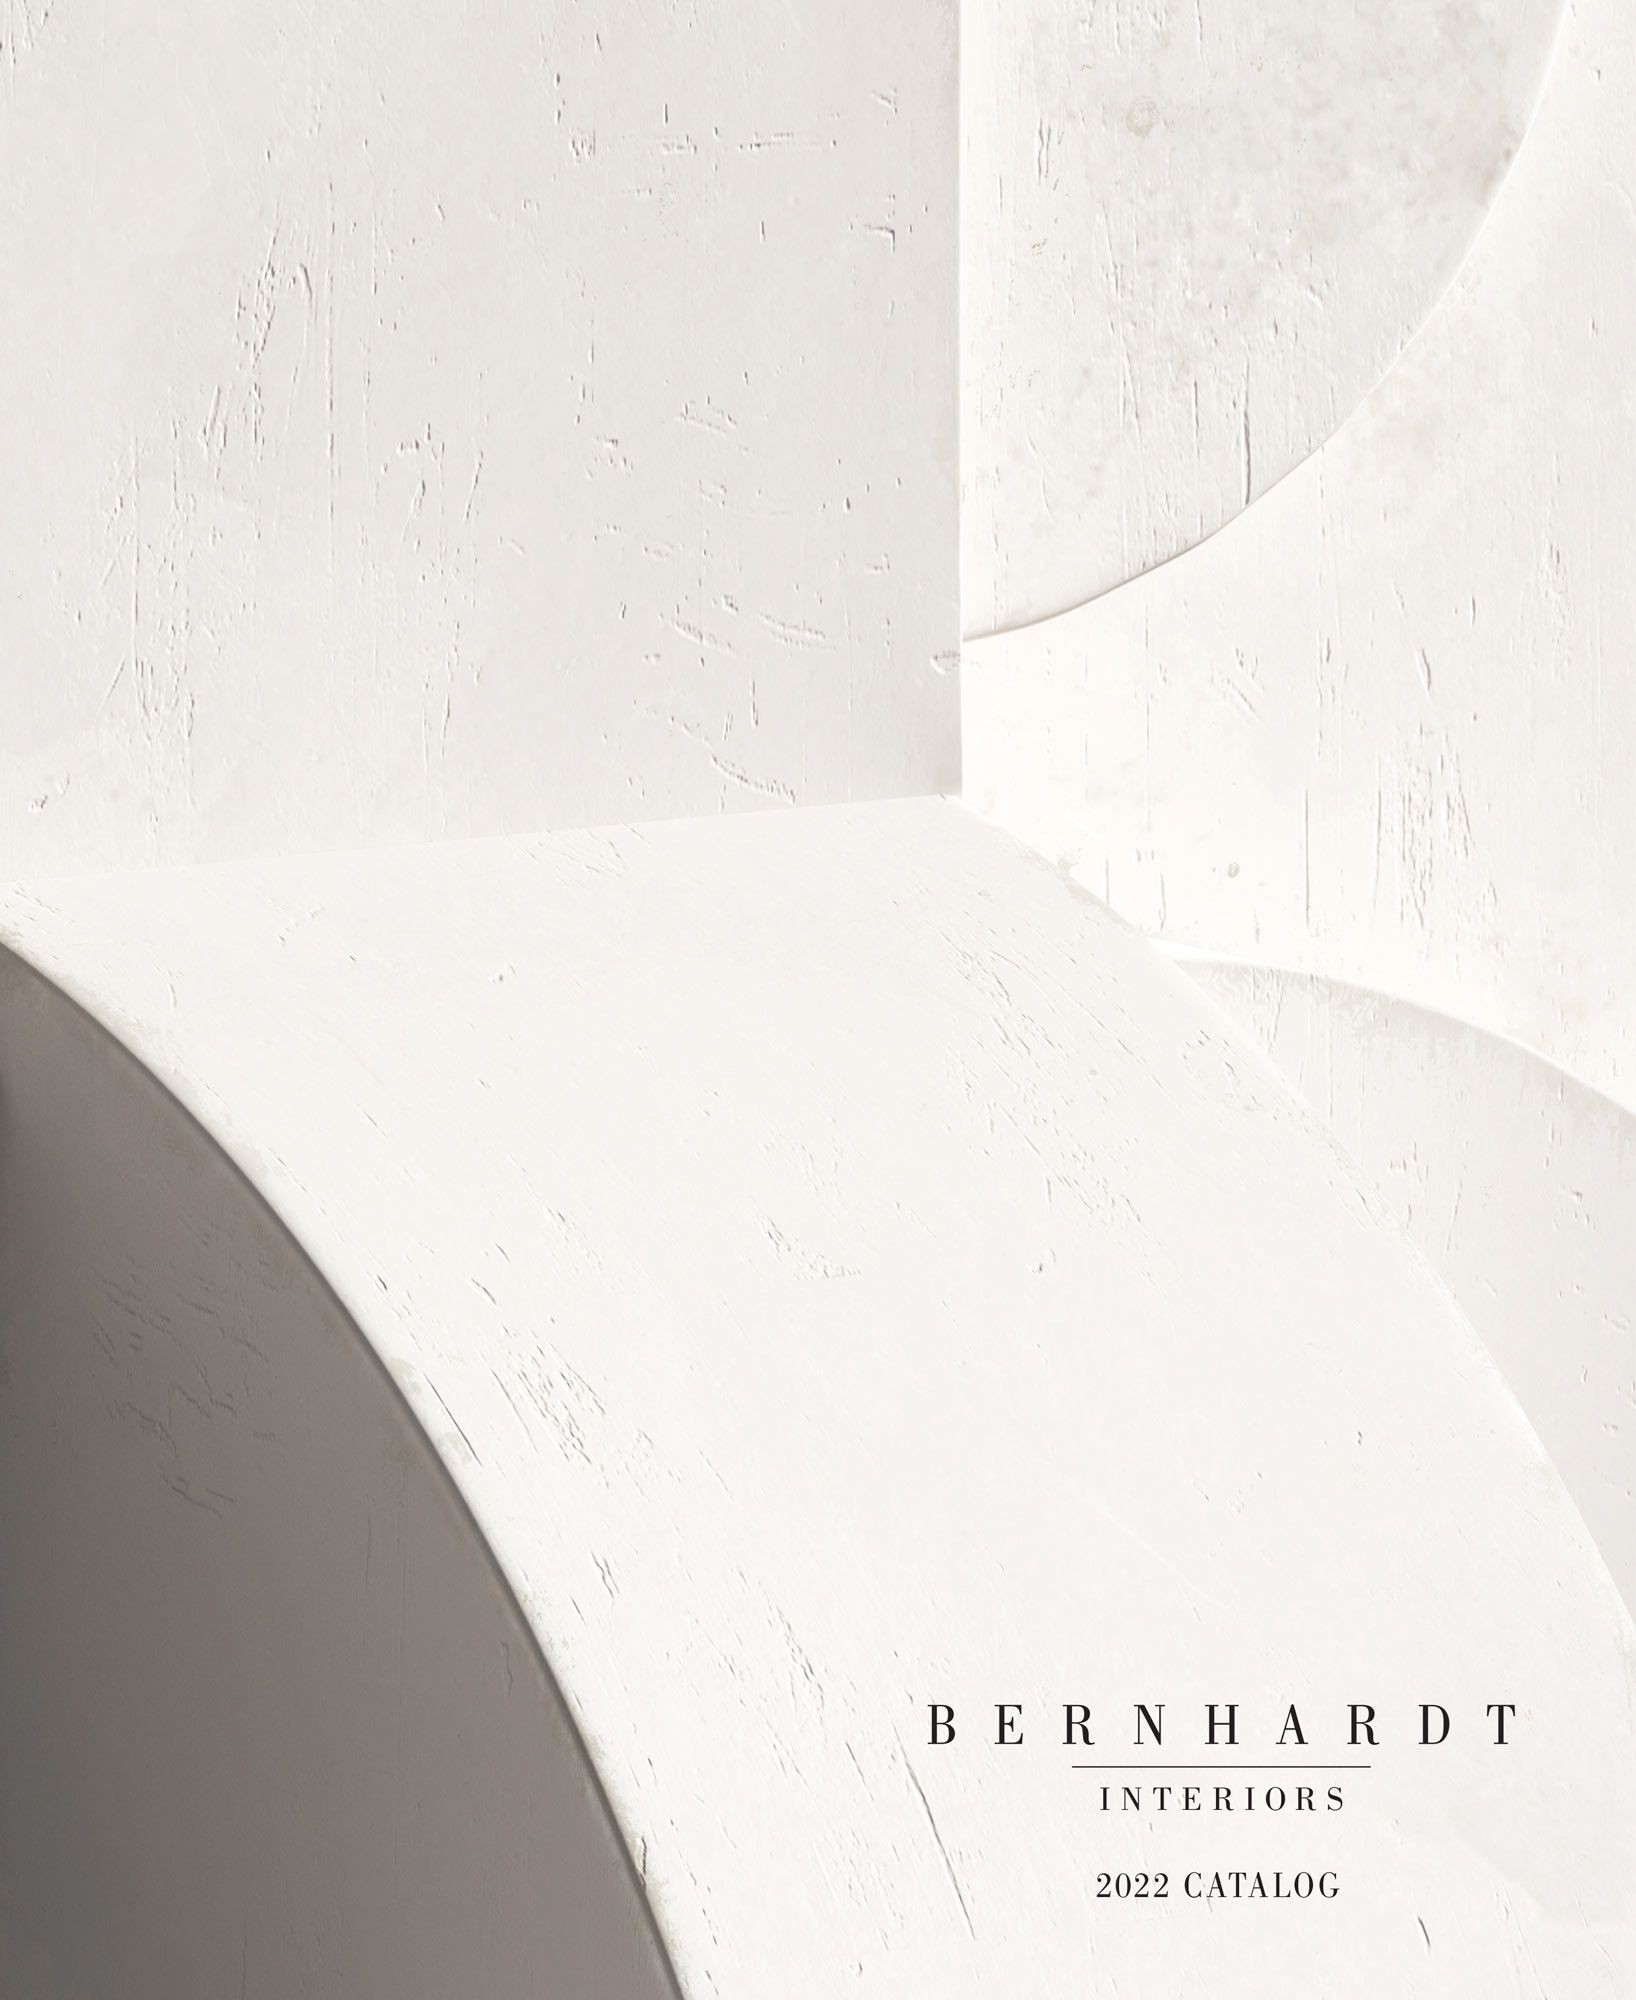 Bernhardt Interiors Catalog